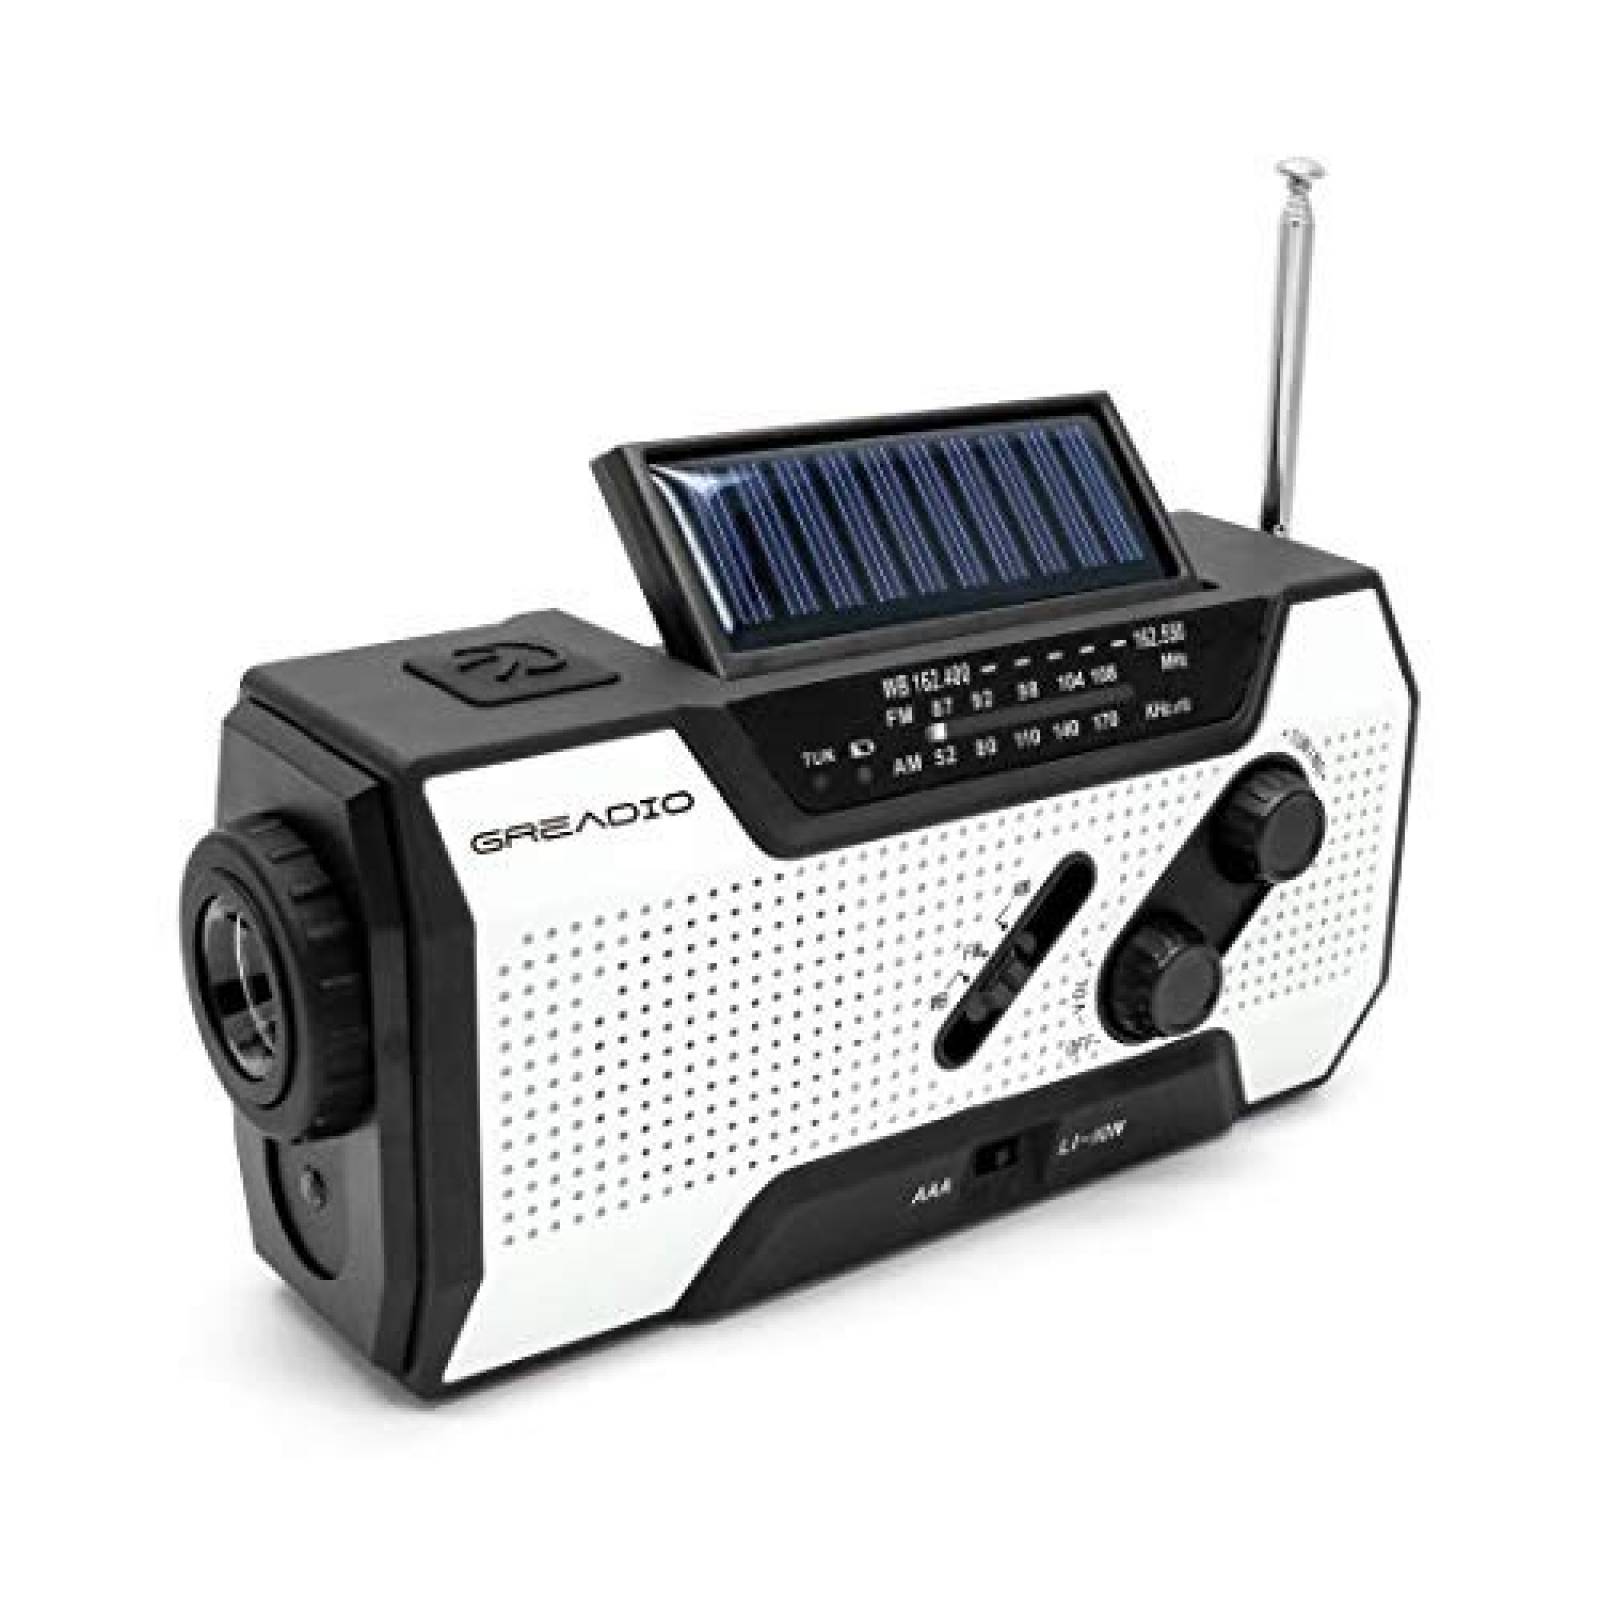 Radio de emergencia meteorológica Greadio Linterna solar